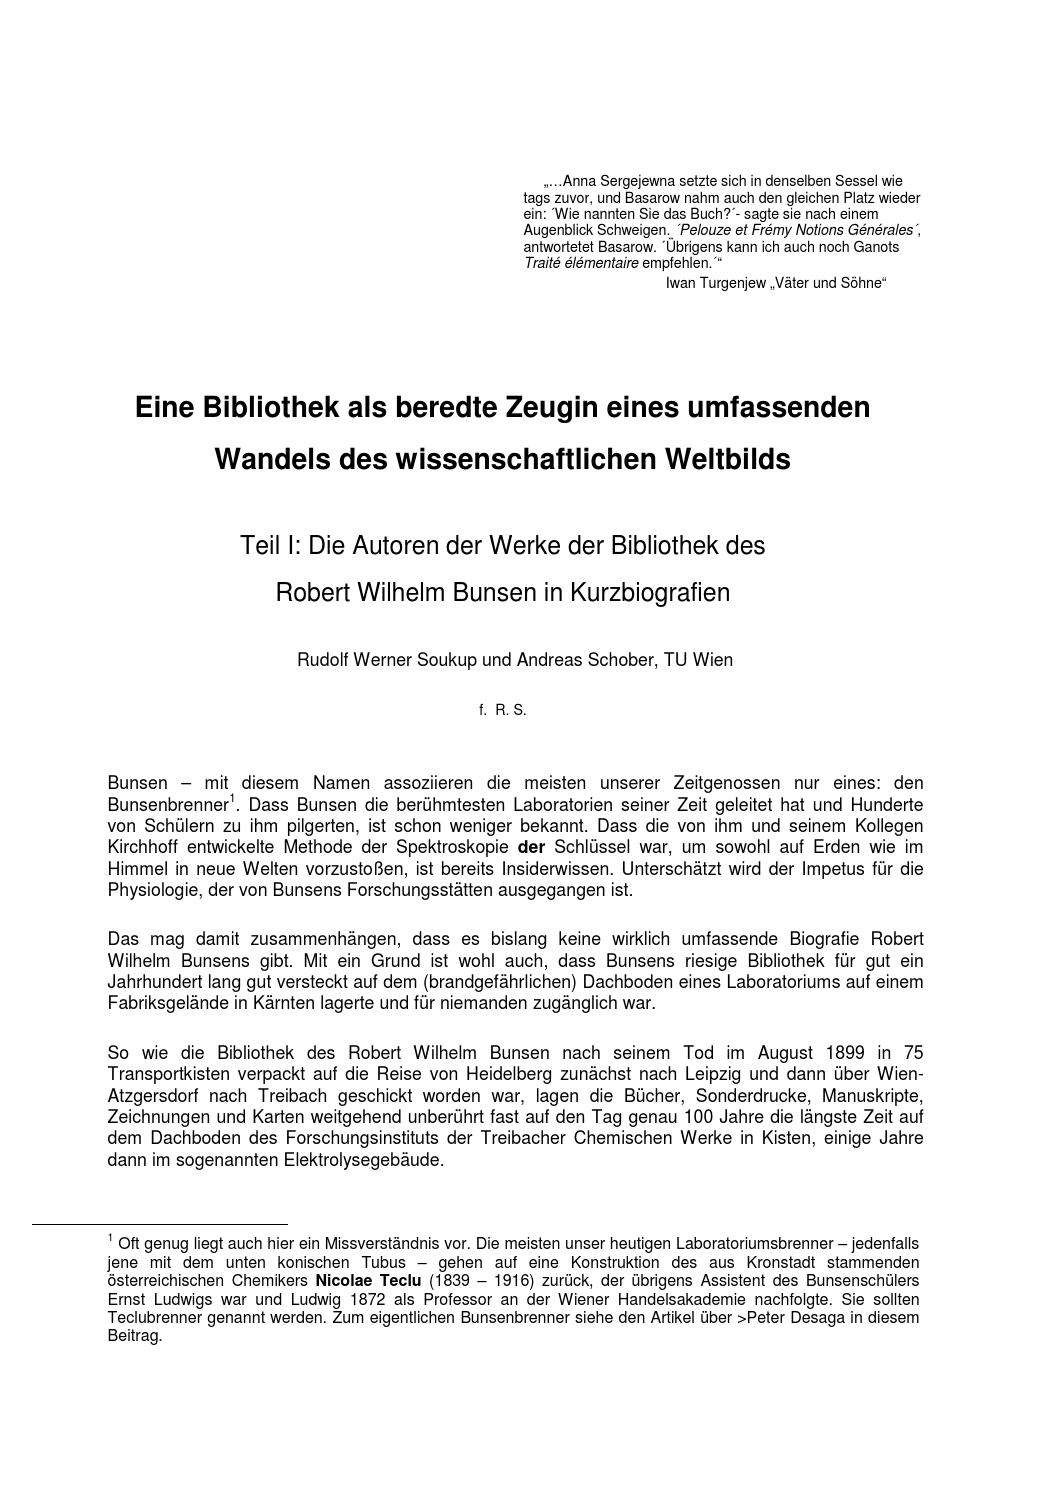 Dresden Botanischer Garten Einzigartig Autoren Der Bunsenbibliothek Teil 1 by Auer Von Welsbach